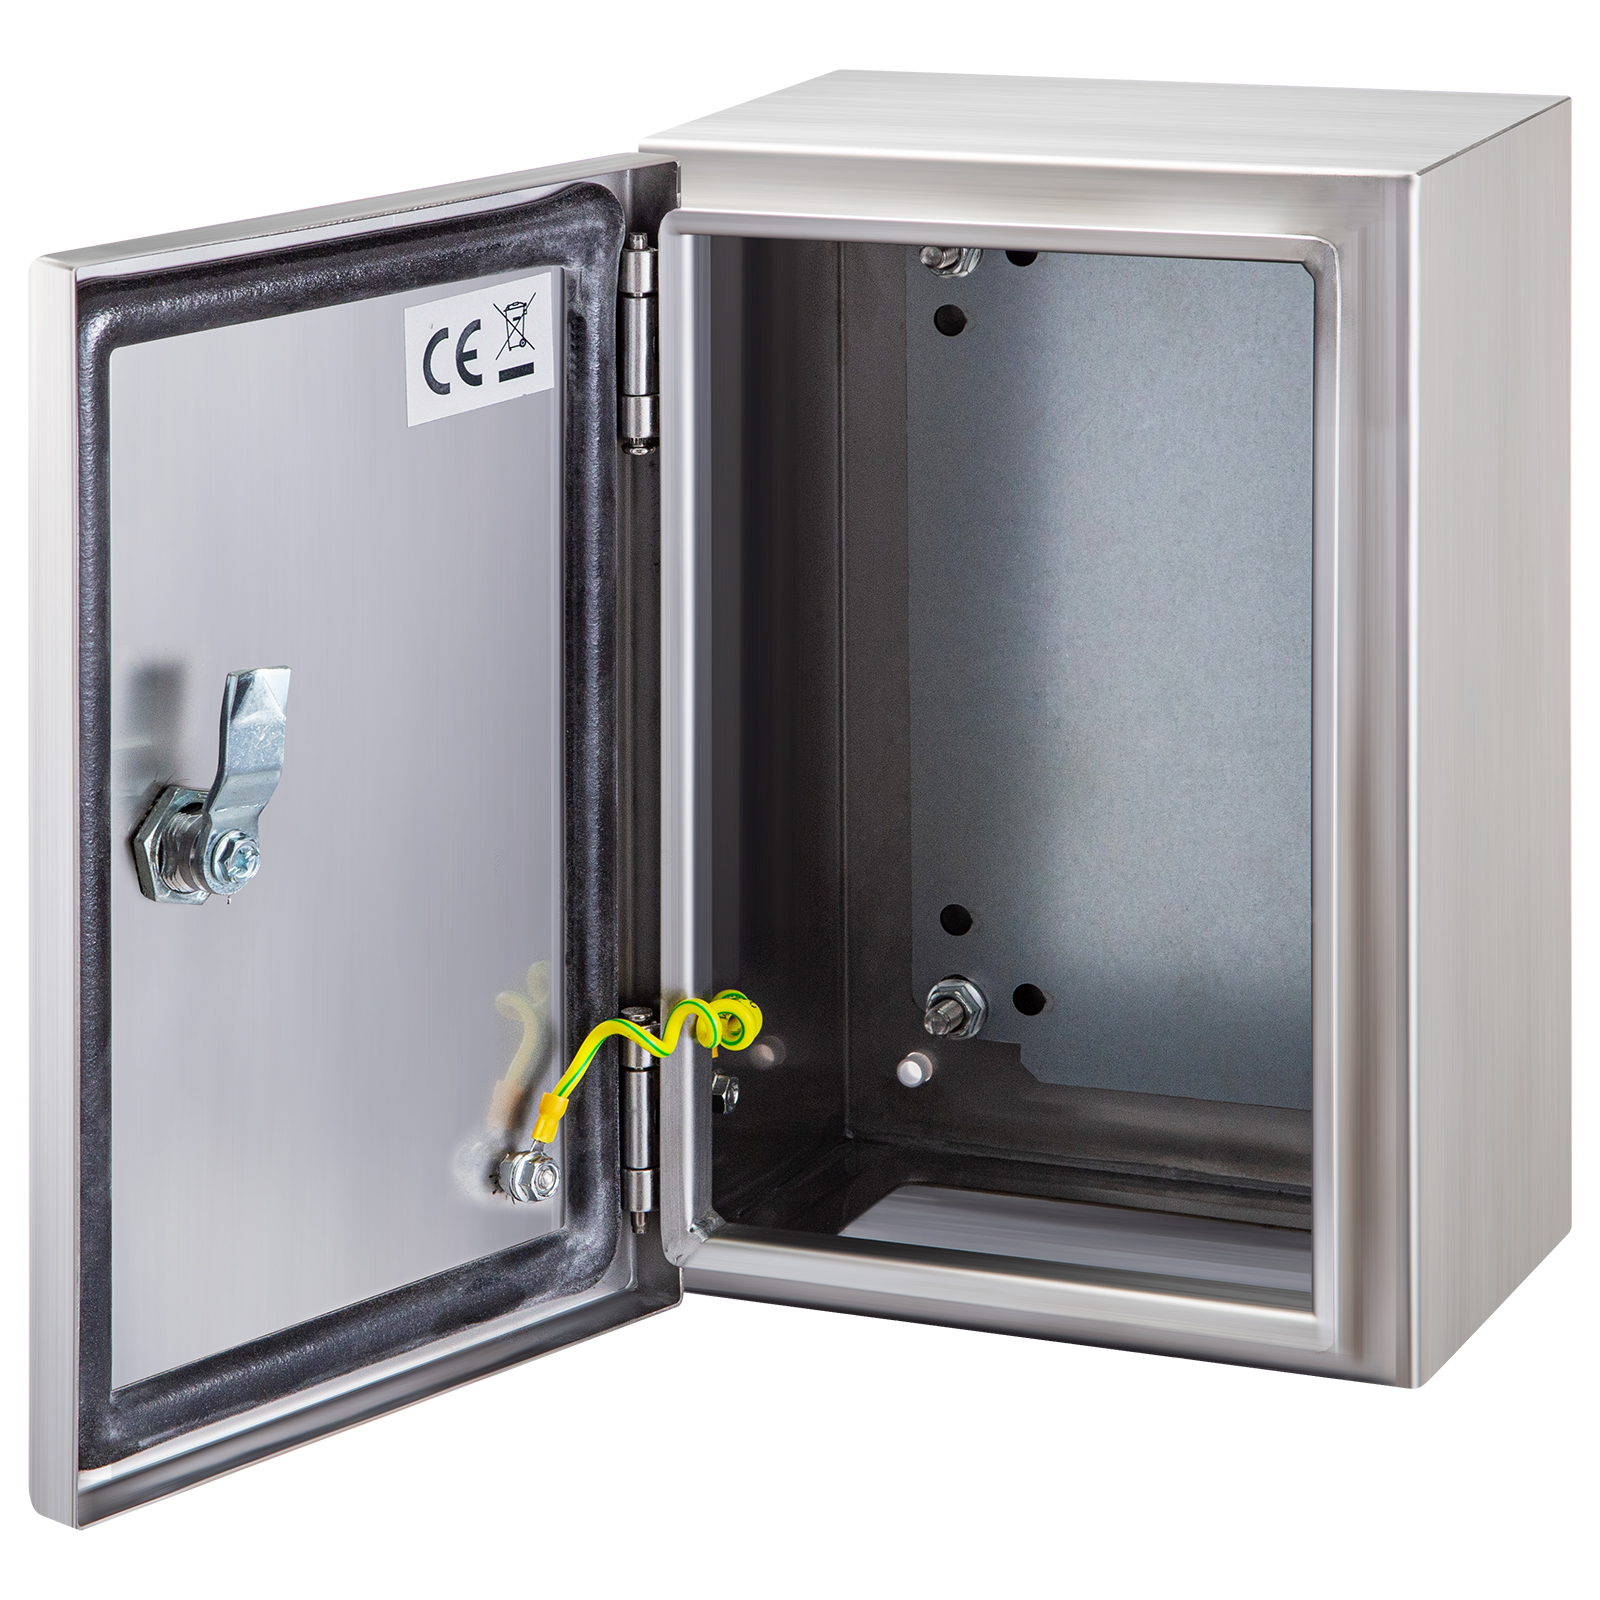 IP65/66 Waterproof Weatherproof Junction Box Plastic Electric Enclosure Case inm 